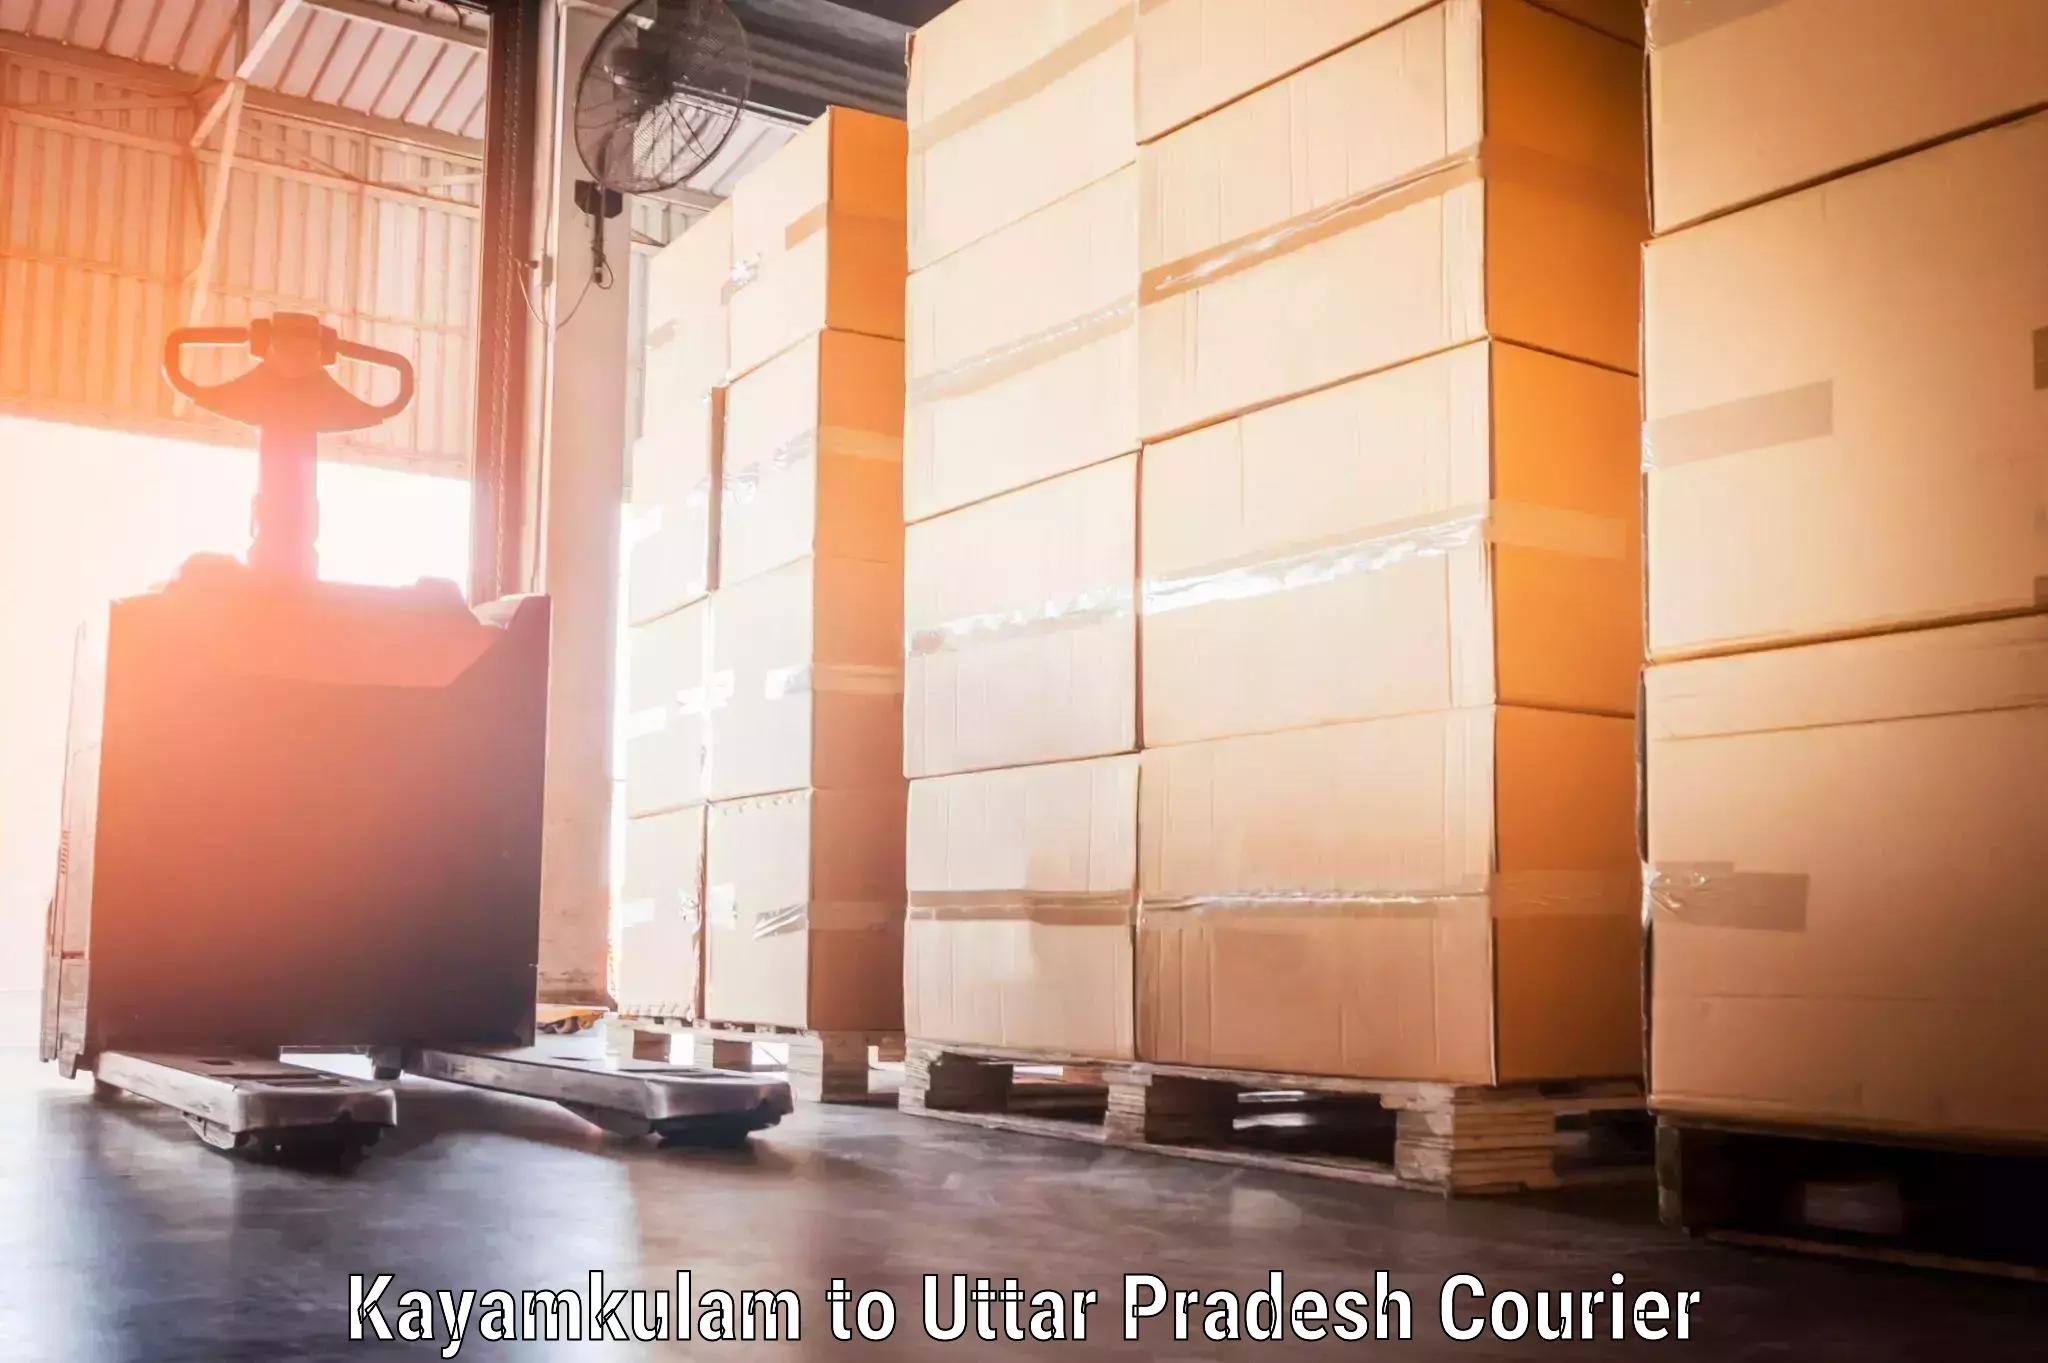 Holiday season luggage delivery Kayamkulam to Ayodhya